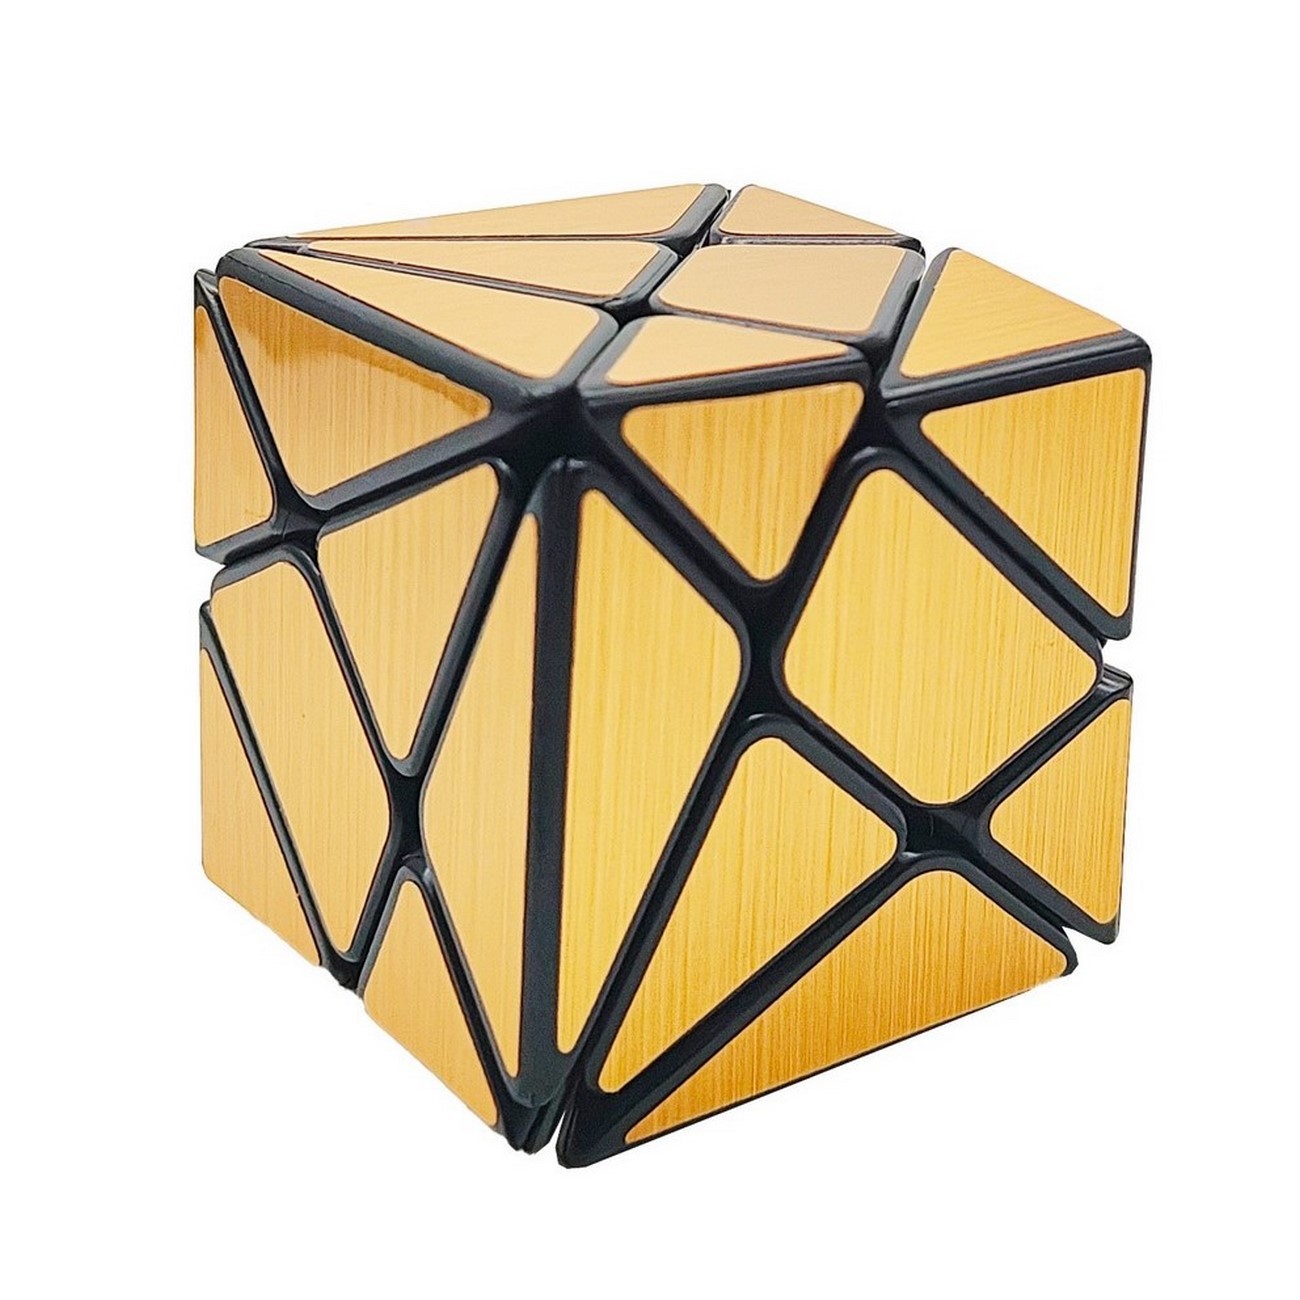 Cubo Soma Mágico Rubik Dorado Juguete Didáctico Destreza